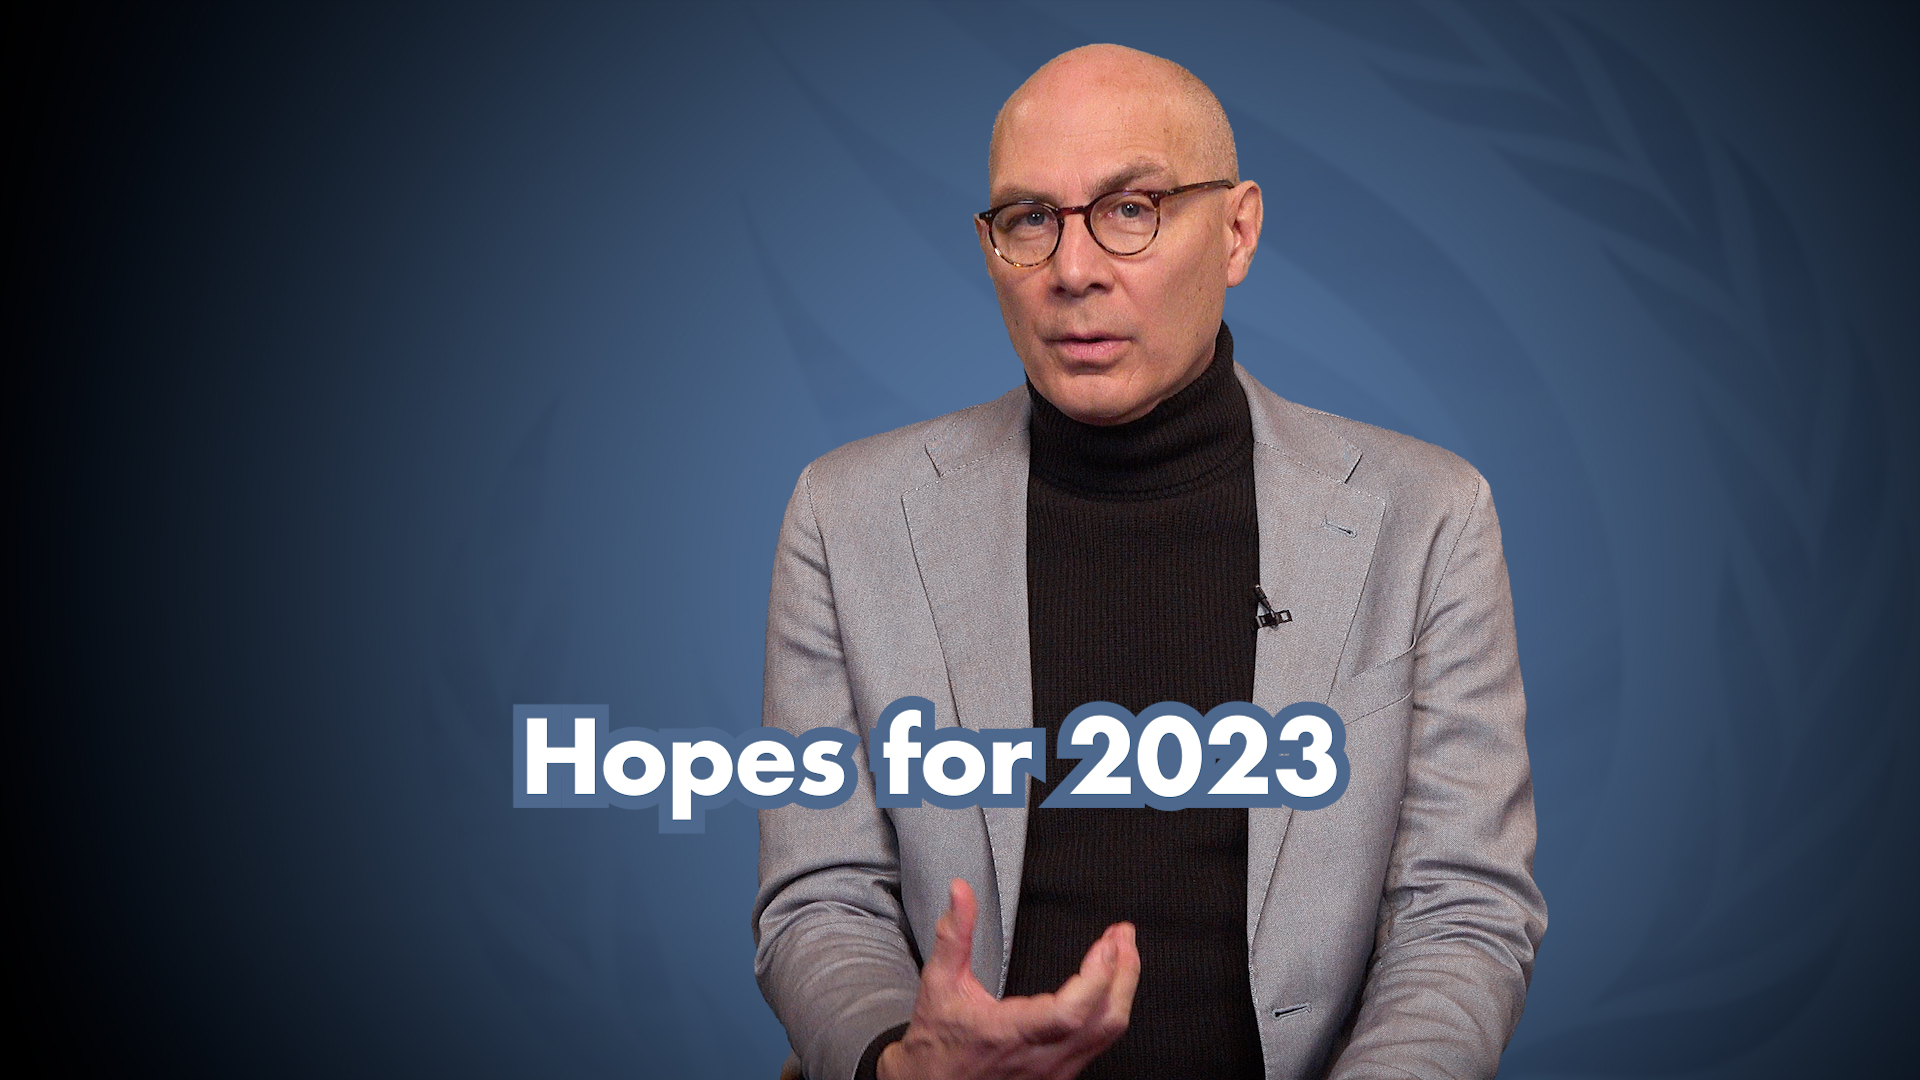 Captura de pantalla de la declaración en vídeo: Esperanzas para 2023